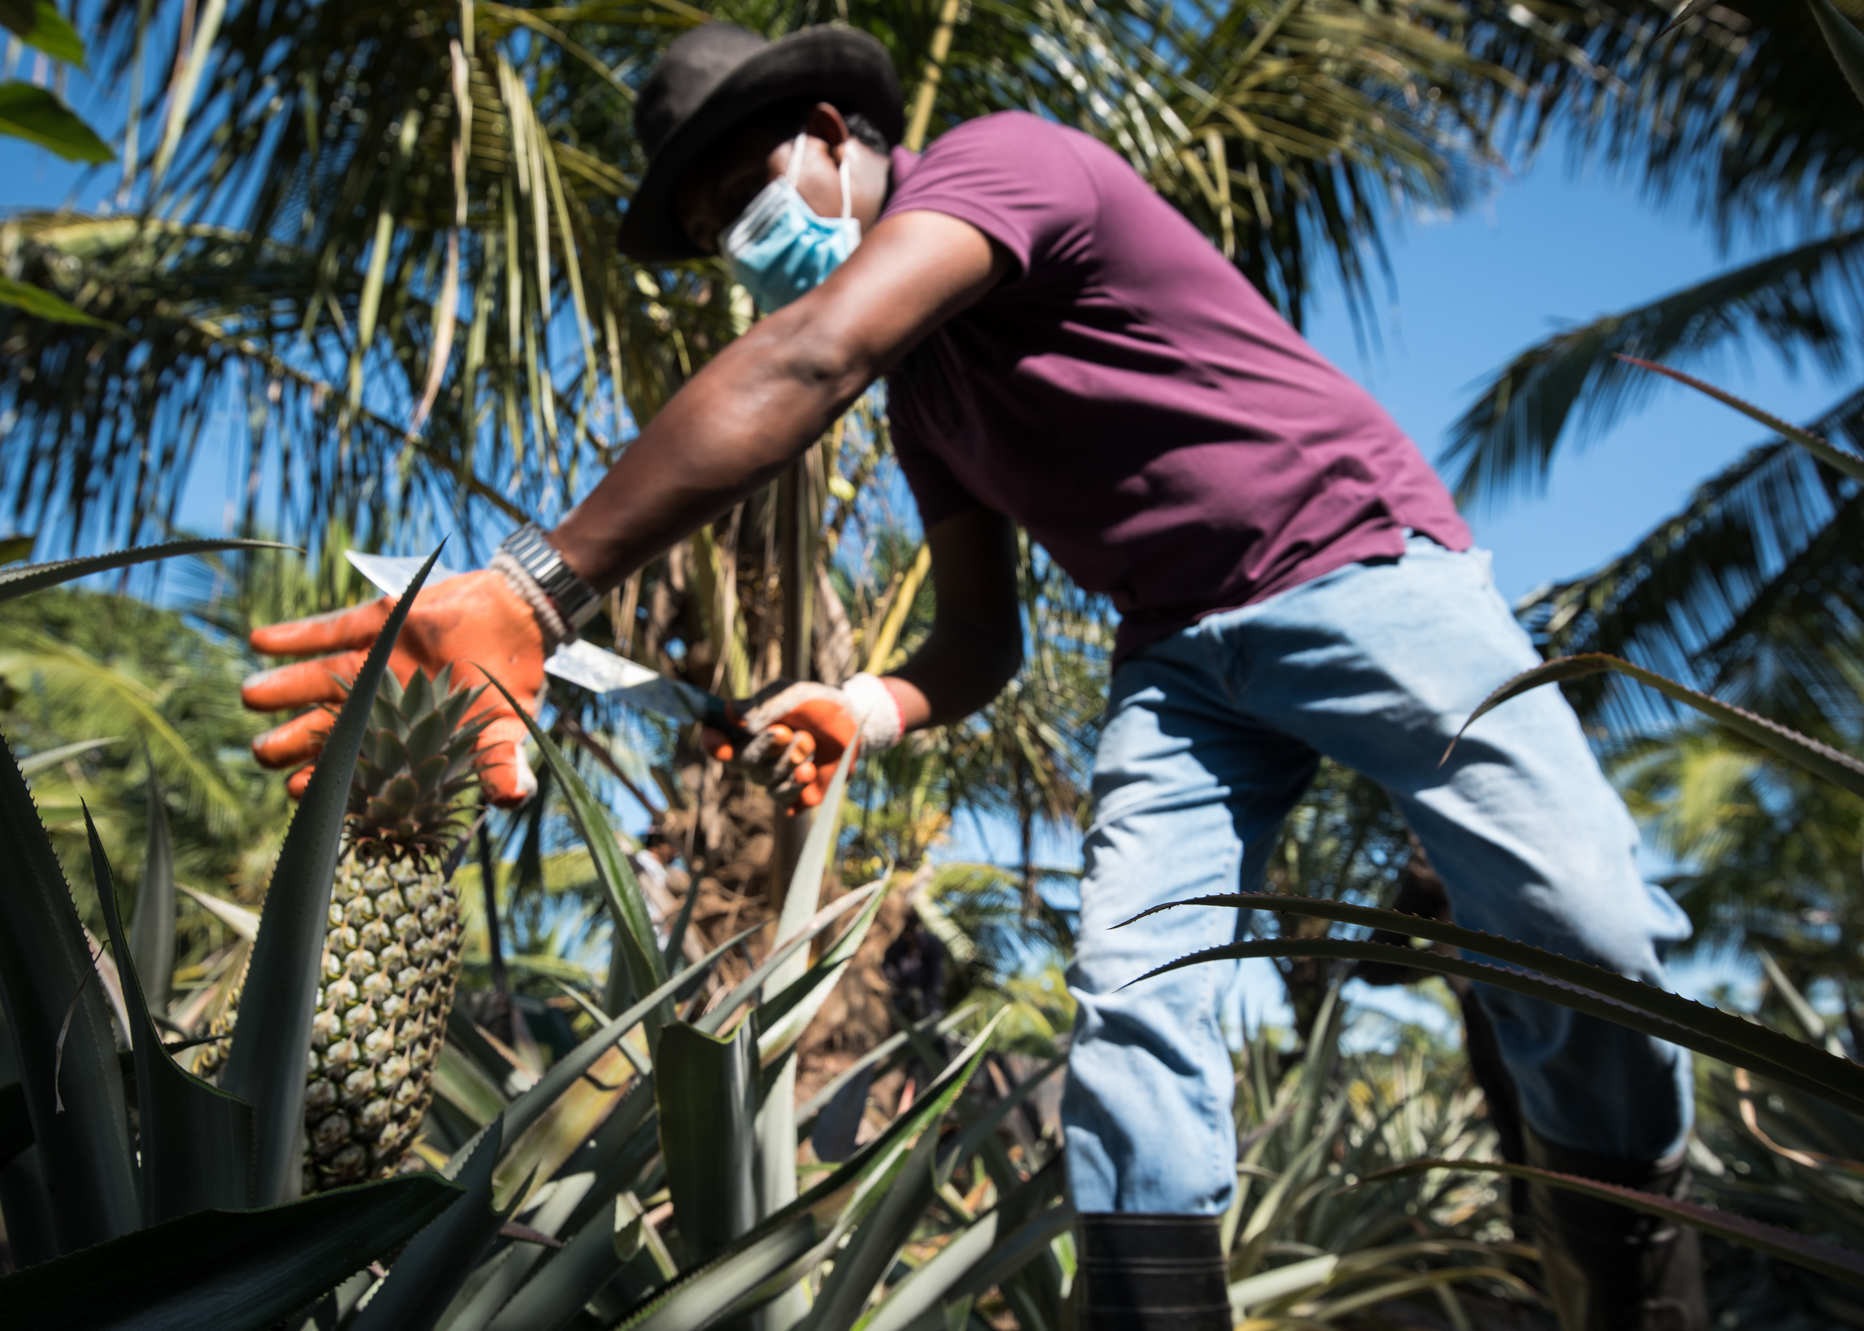 A farmer harvests pineapples in Sri Lanka.